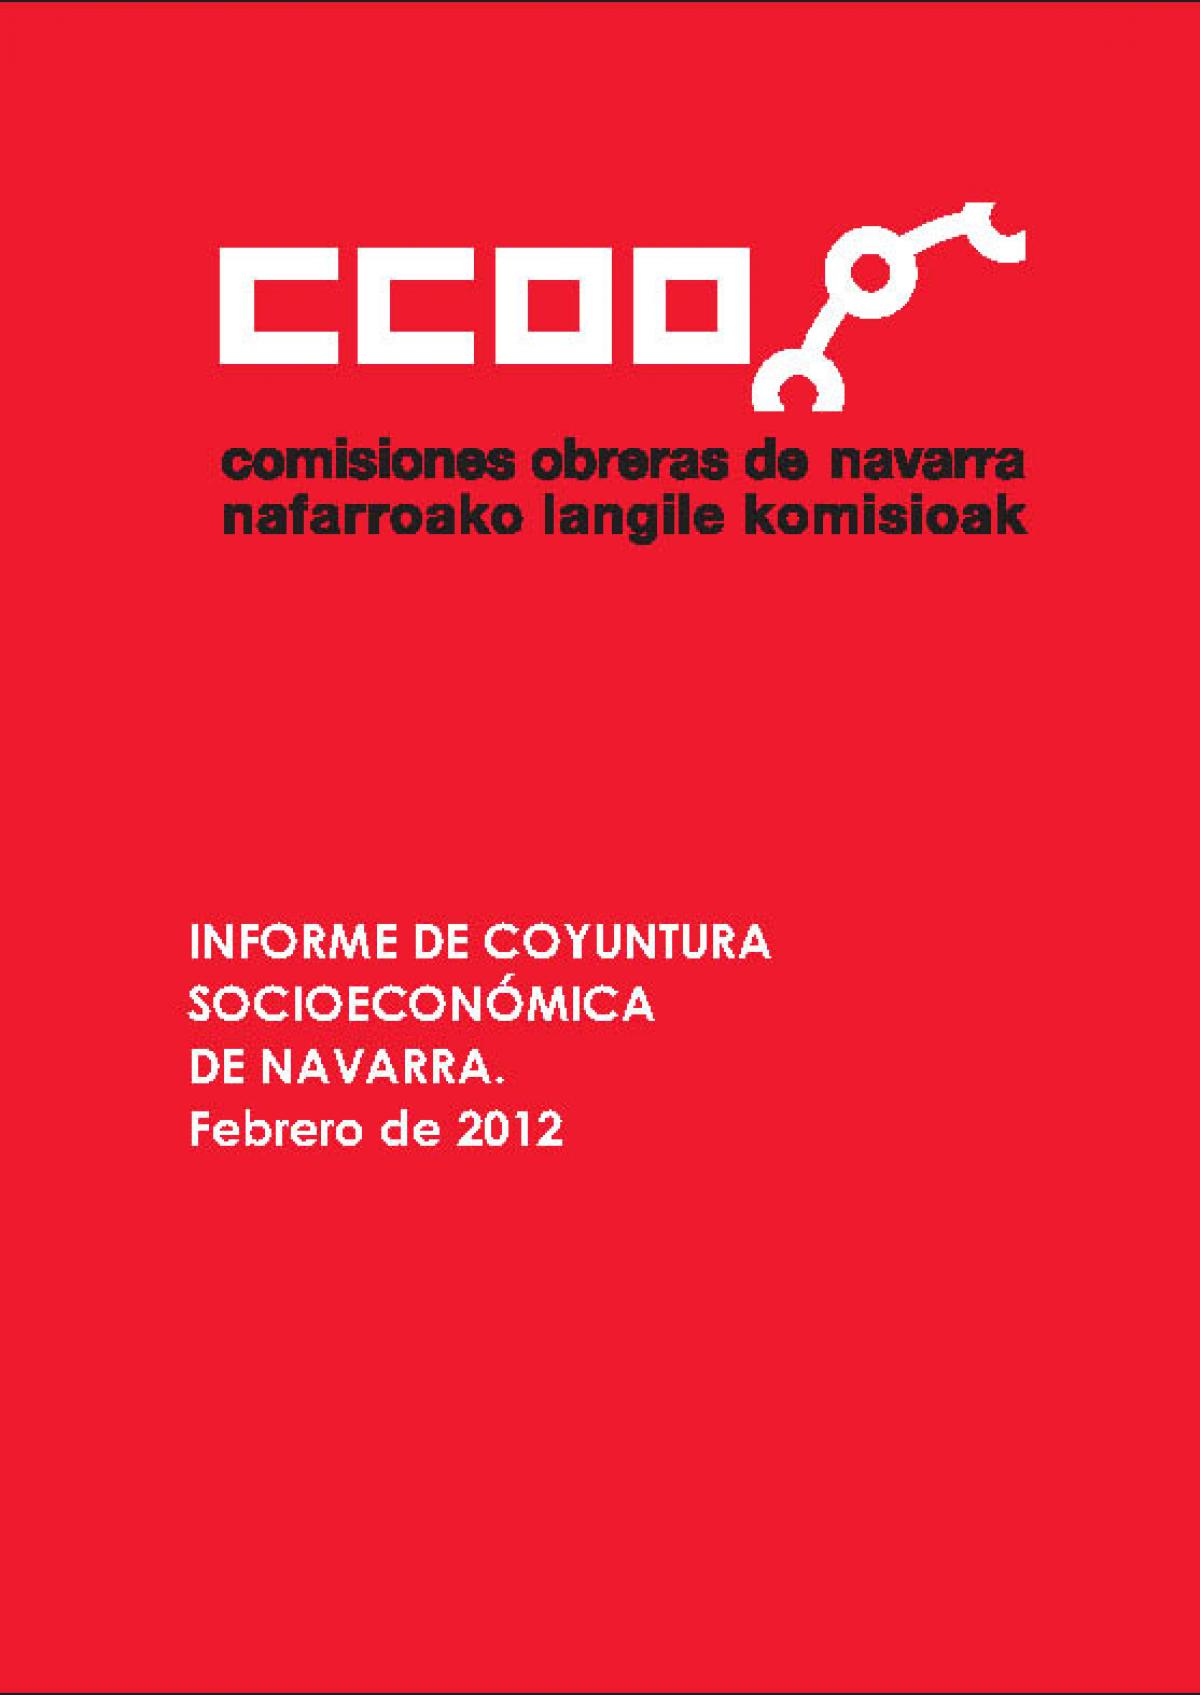 Informe de Coyuntura Socioeconómica, febero 2012